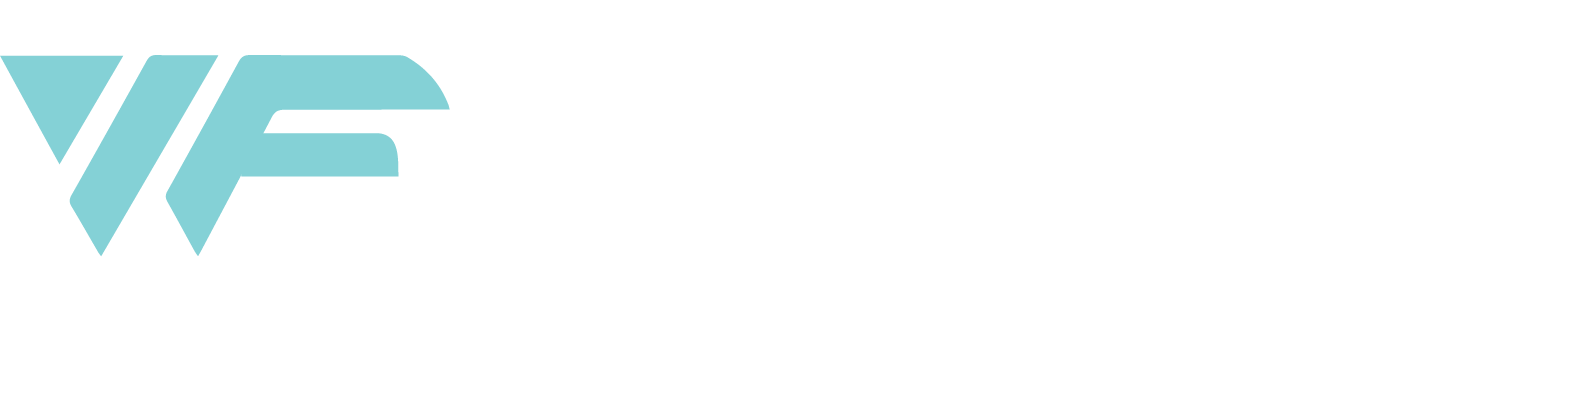 Wave Fitness Club logo